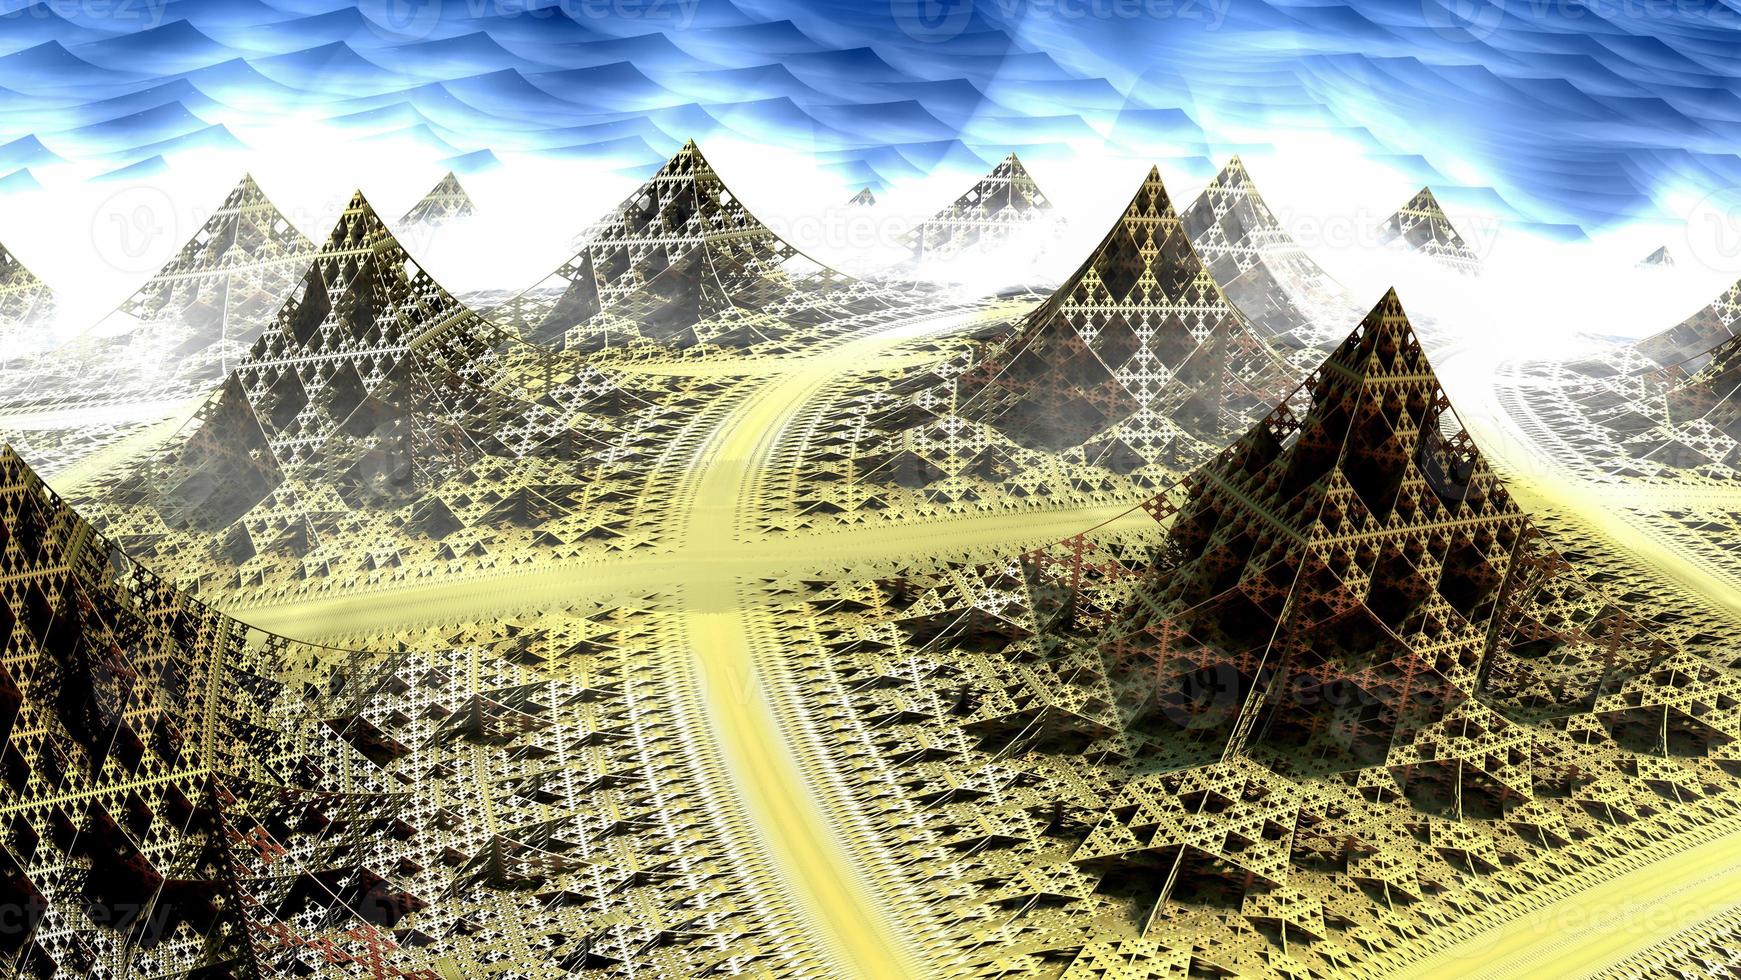 abstracte computer gegenereerde fractal ontwerp. 3d aliens illustratie van een prachtige oneindige wiskundige mandelbrot set fractal meerdere piramide toren foto